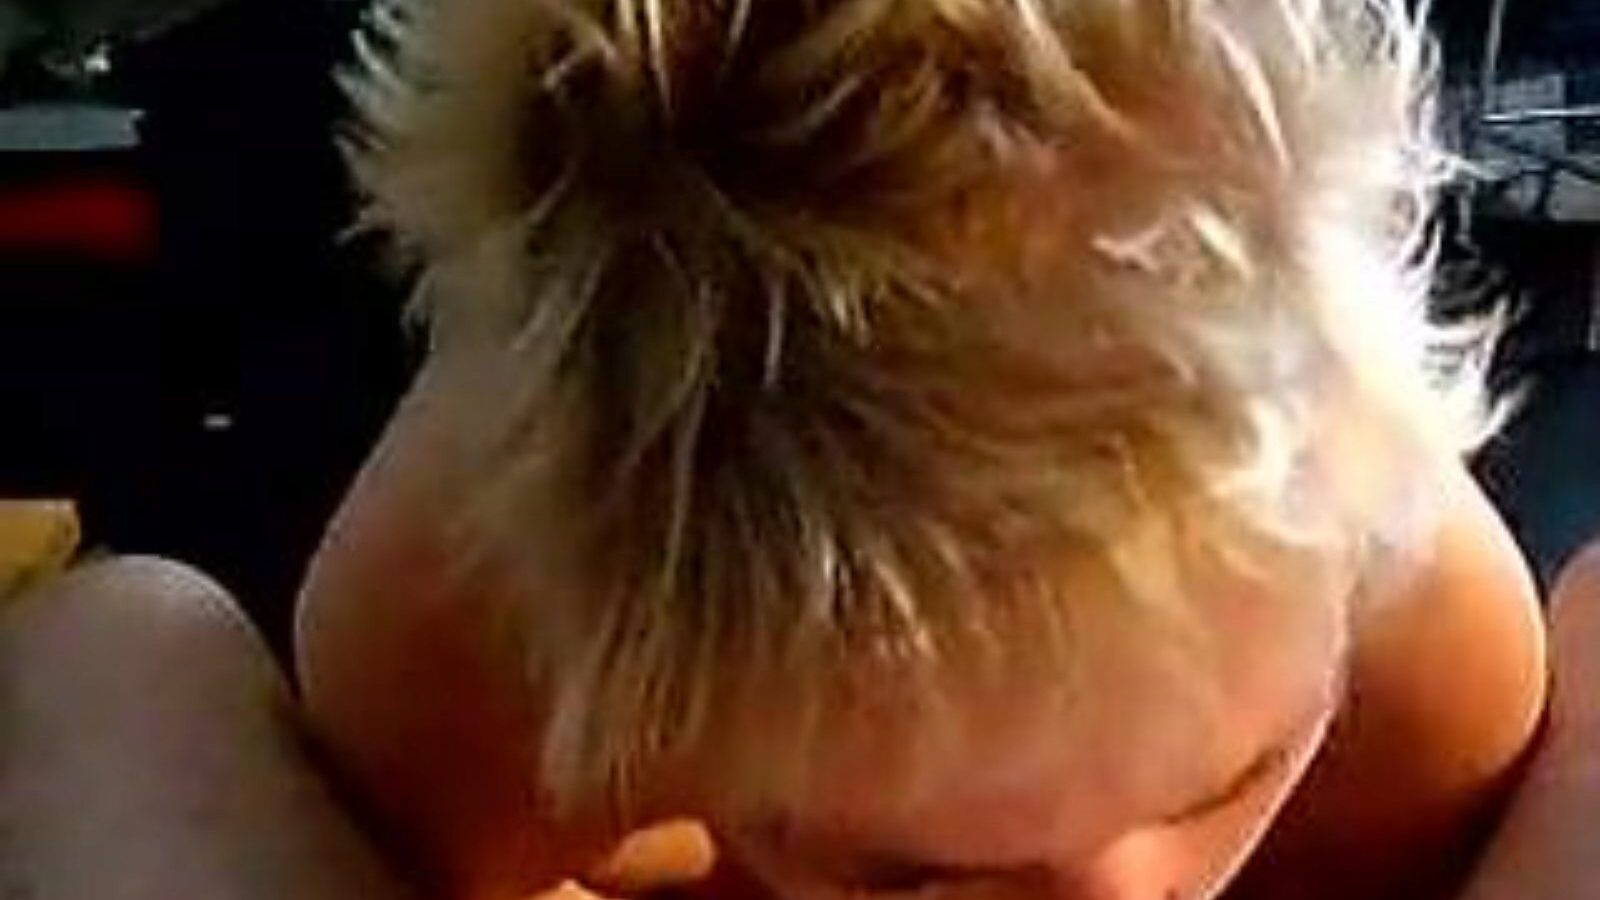 леуке даме: хомемаде & олд гирл порн видео а6 - кхамстер гледајте леуке даме тубе фуцкфест филм бесплатно на кхамстер, са најтоплијом колекцијом холандских домаћих, старих девојака и сиса порнографских свирки